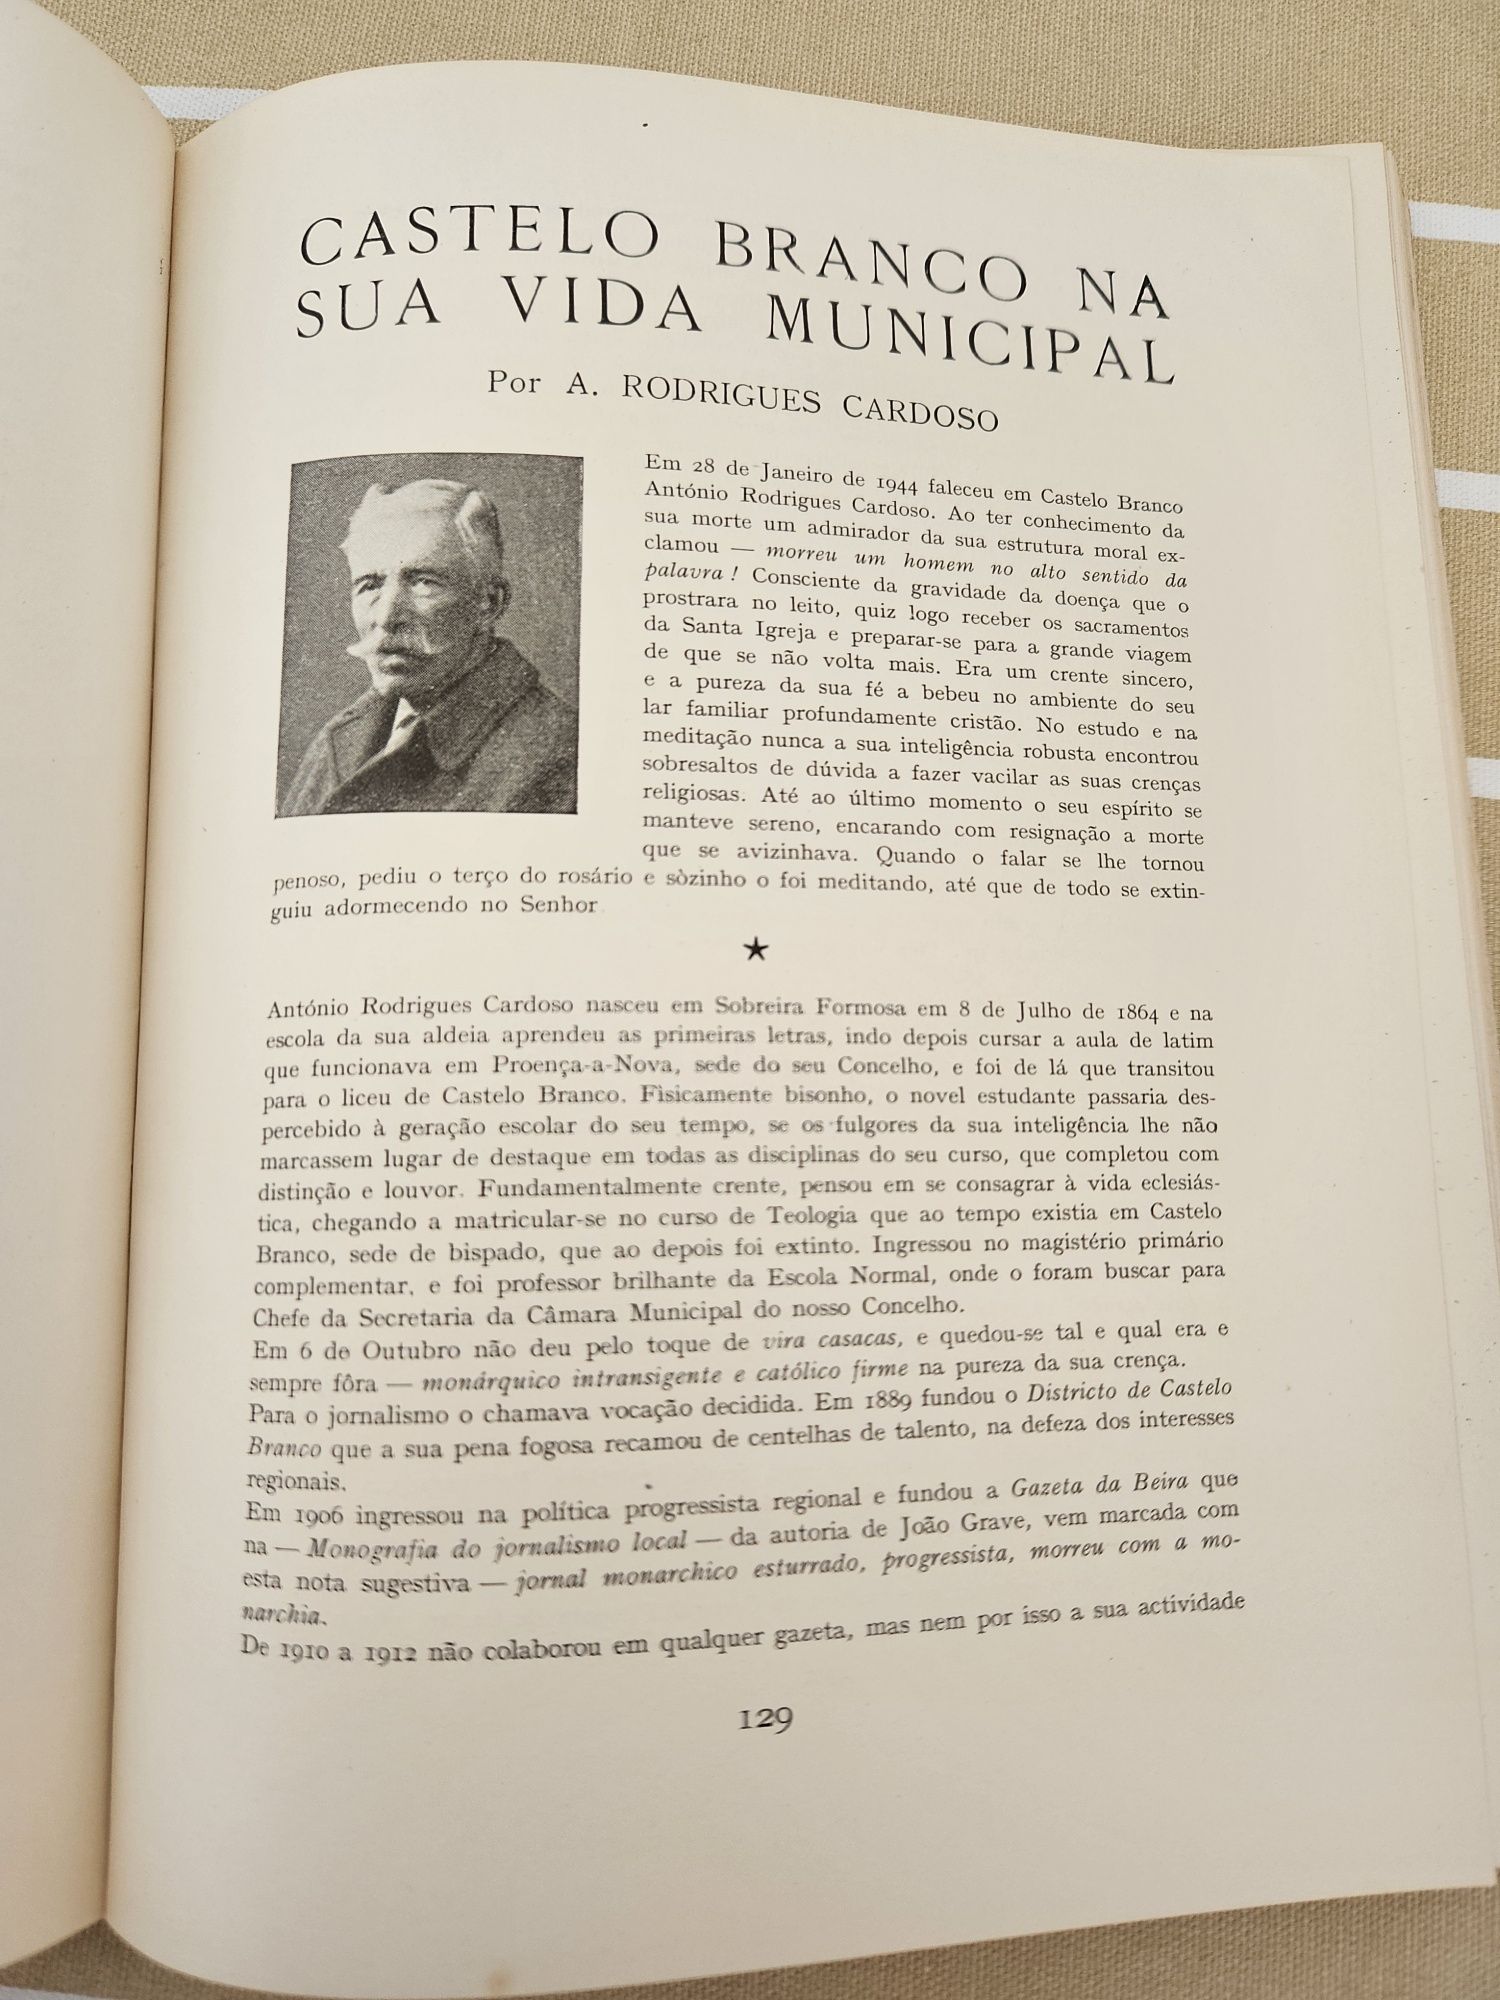 MONOGRAFIA 1950 - subsidios para a história regional da Beira Baixa